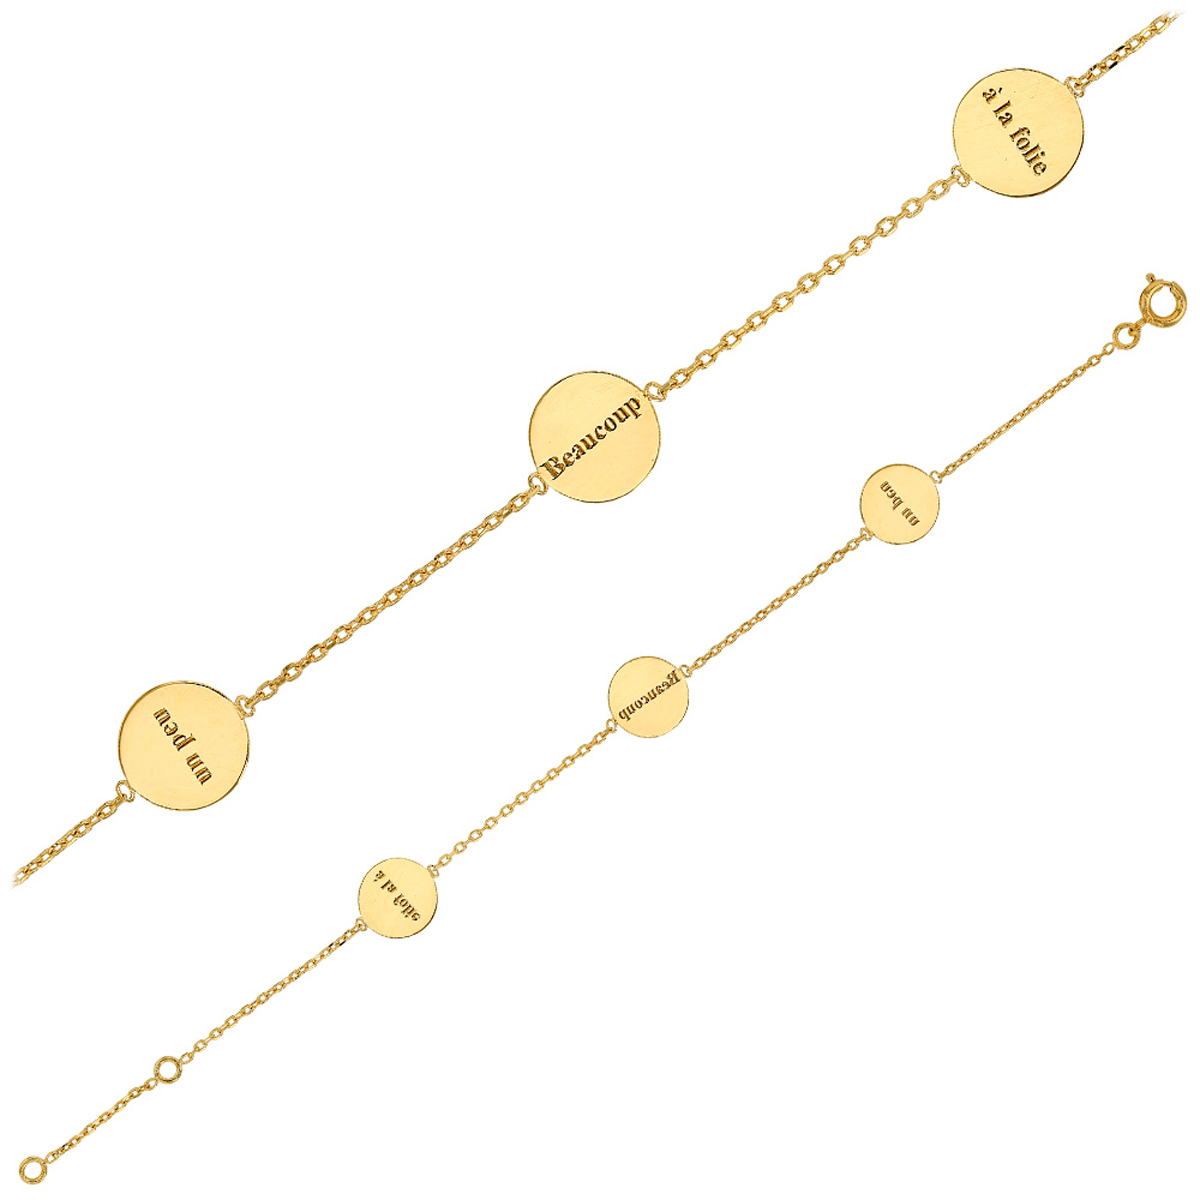 Bracelet plaqué or \'Love\' doré (un peu - beaucoup - à la folie) - 17 cm 10 mm - [Q3316]